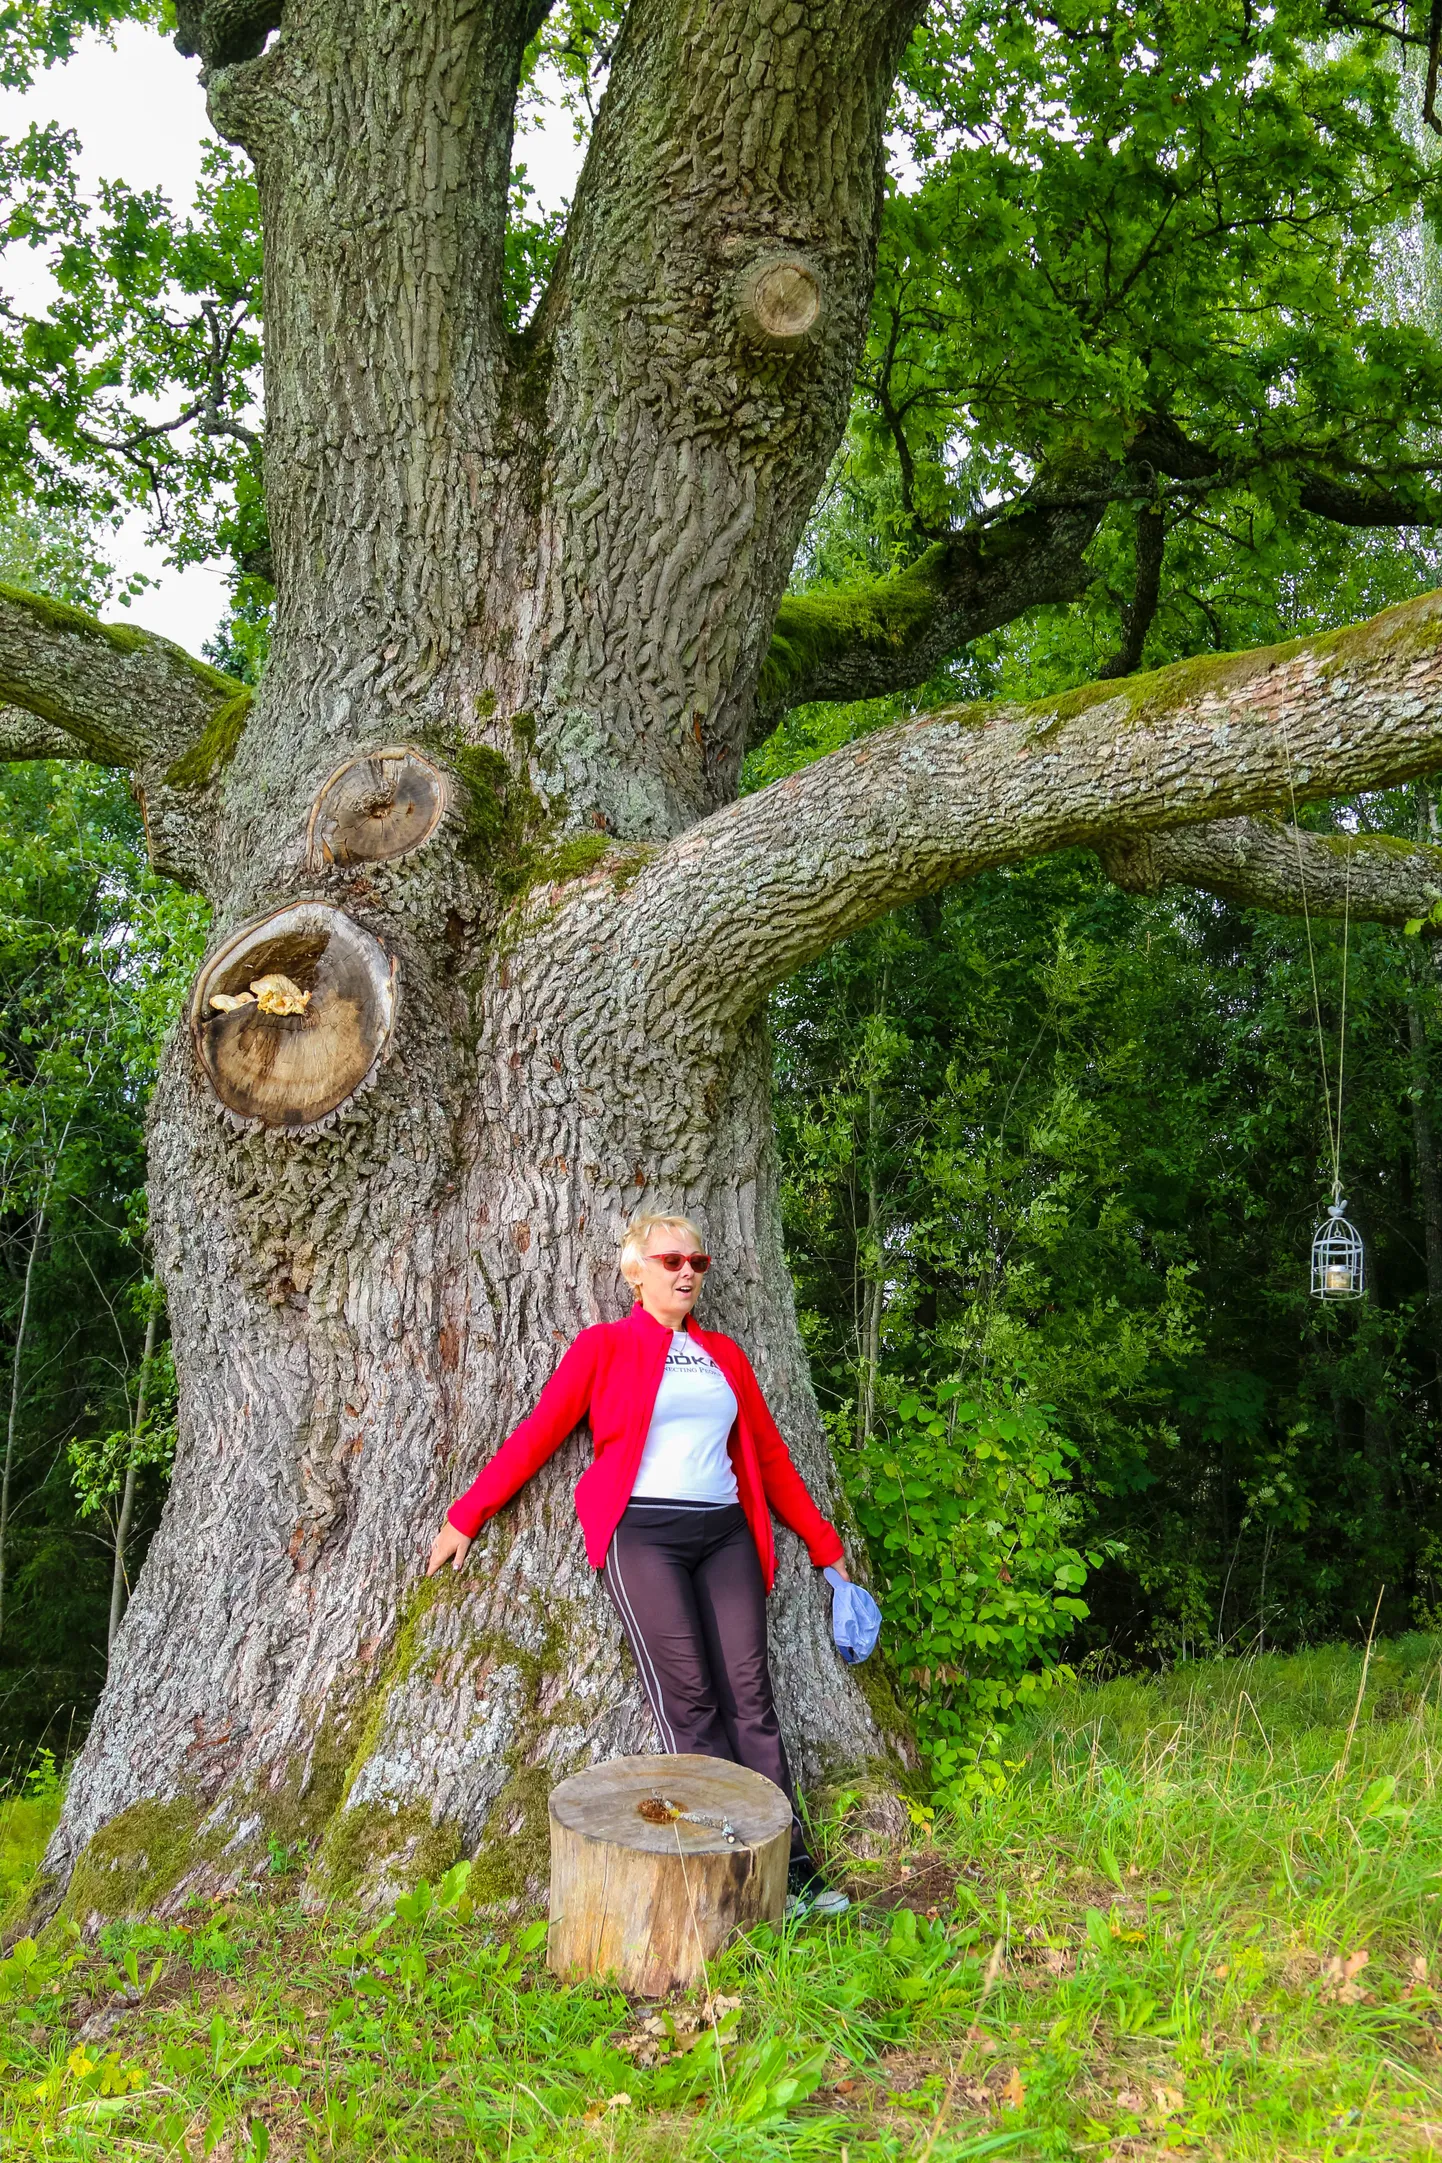 Tamme rinnasümbermõõt on viimase mõõtmise andmetel 530 sentimeetrit ja kõrgus 22 meetrit, mis asetab ta kindlalt Lõuna-Eesti võimsaimate puude hulka. Kiisatamme perenaine Tuuli Merimaa teab, et ennevanasti olnud siin hiiemägi.